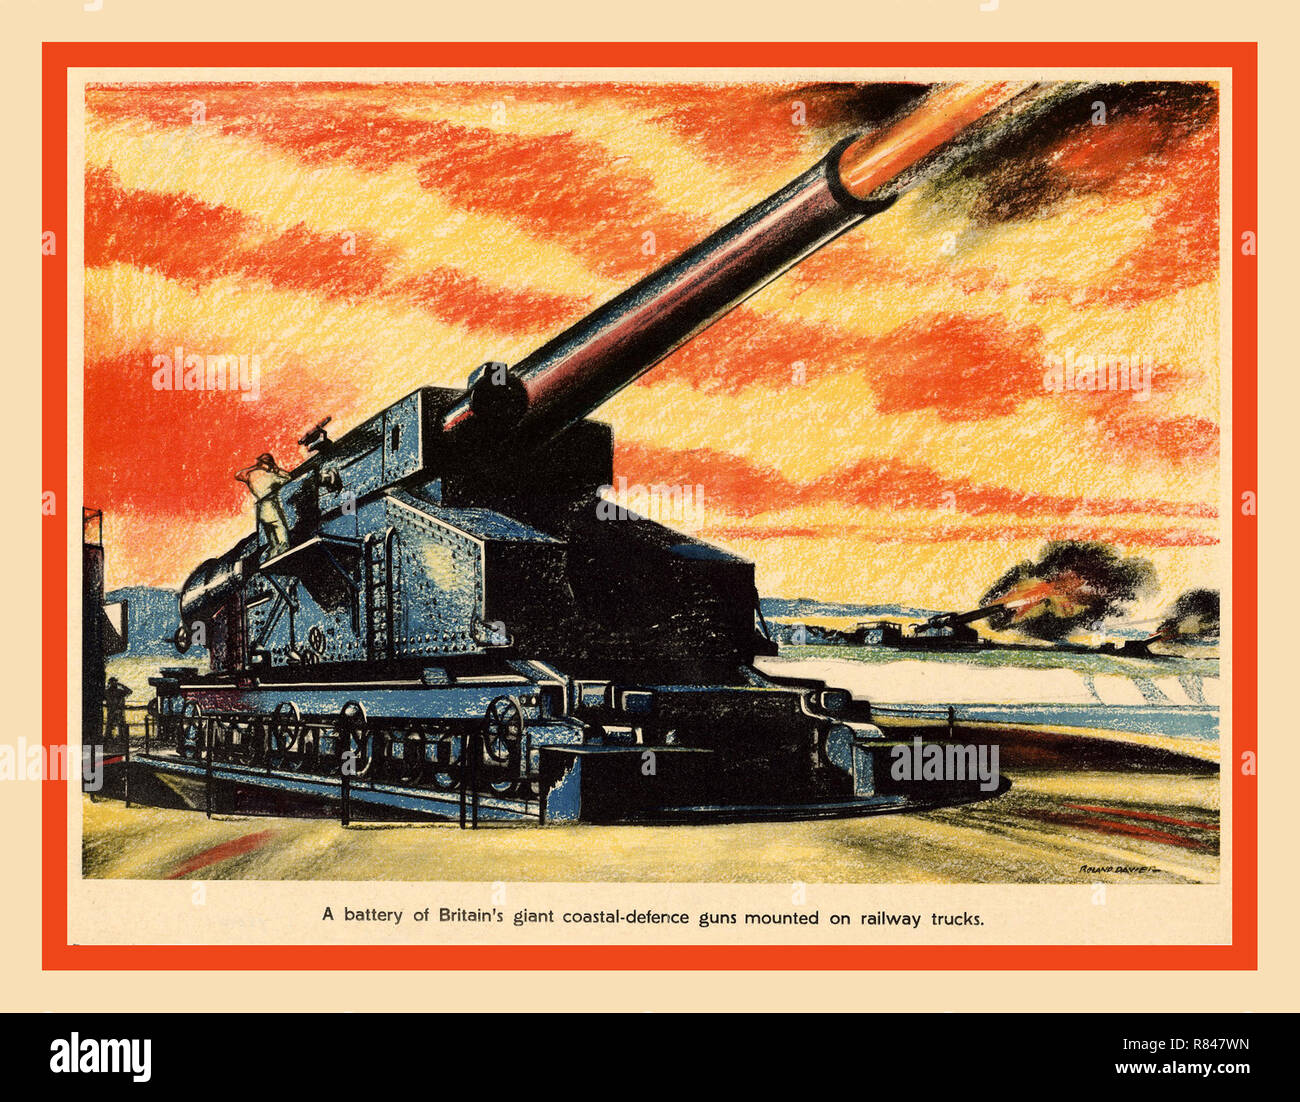 Vintage British WW2 Poster Krieg Kunst Propaganda Artwork 1942 eine Batterie von Großbritanniens riesige Küstengebiete - Verteidigung Waffen abfeuern, Auf Lkw montiert Stockfoto